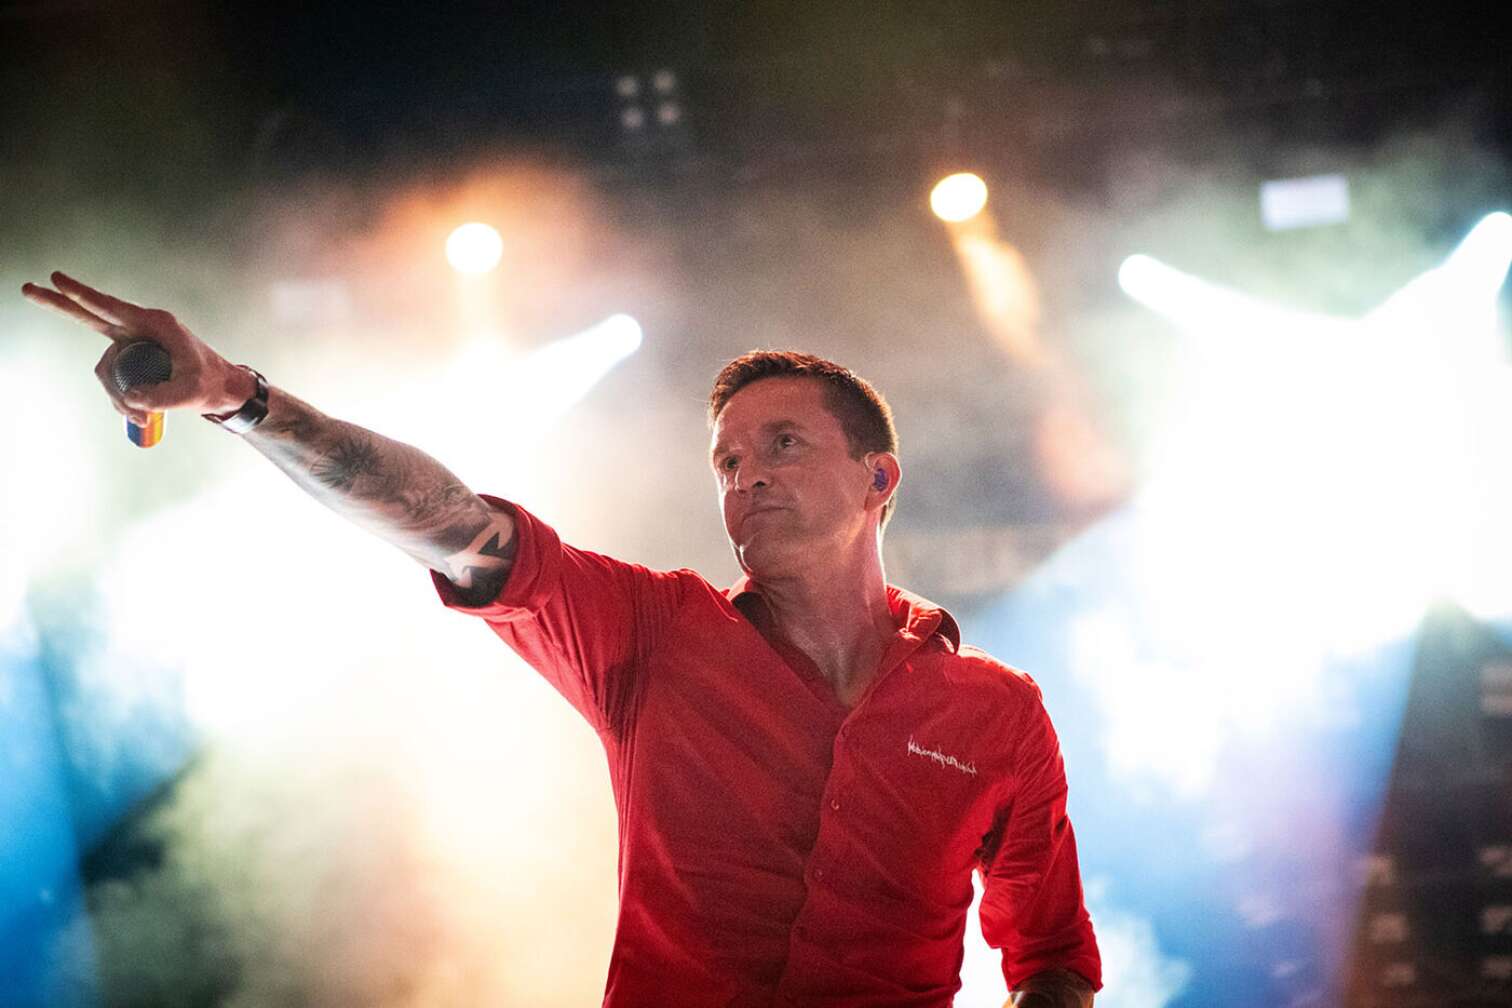 Heaven Shall Burn auf der Bühne mit rotem Hemd